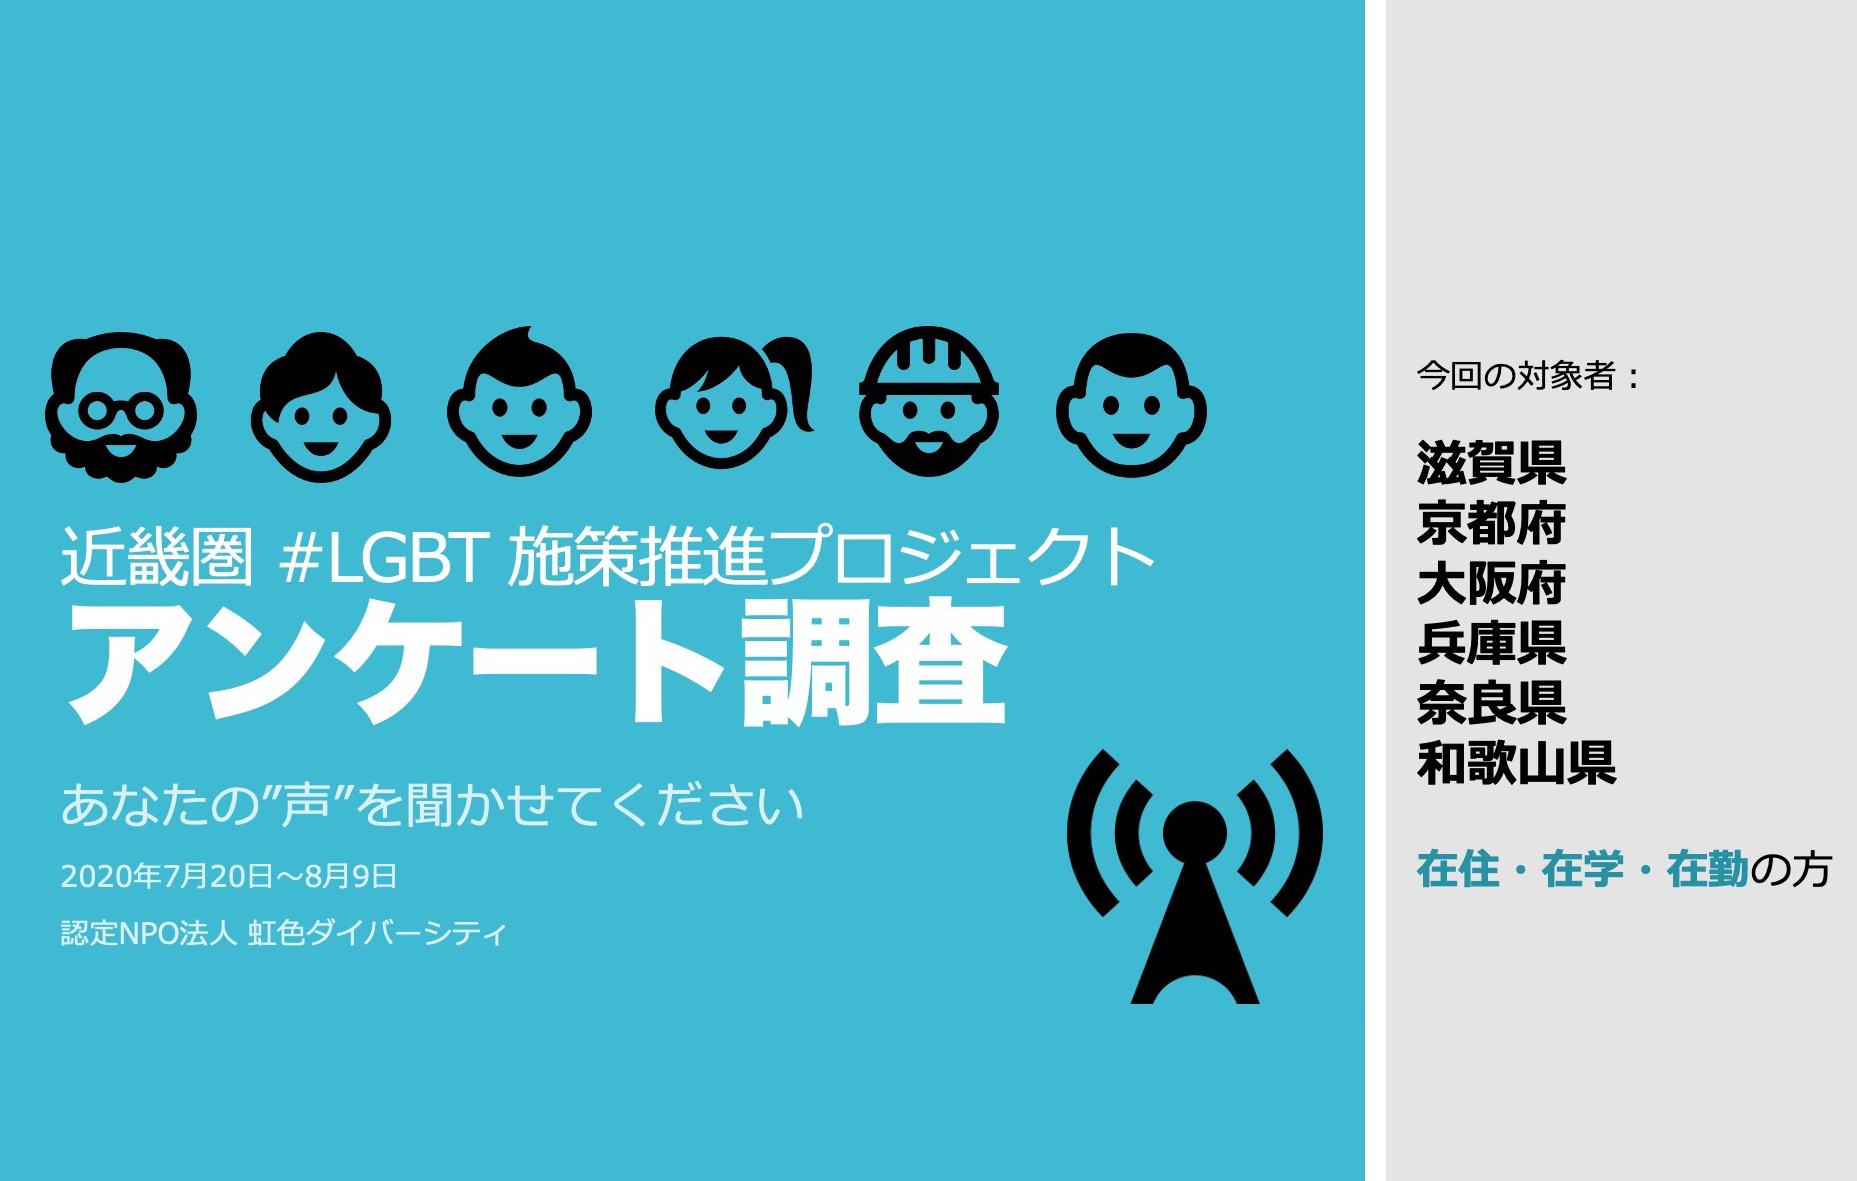 近畿圏LGBT施策推進プロジェクト